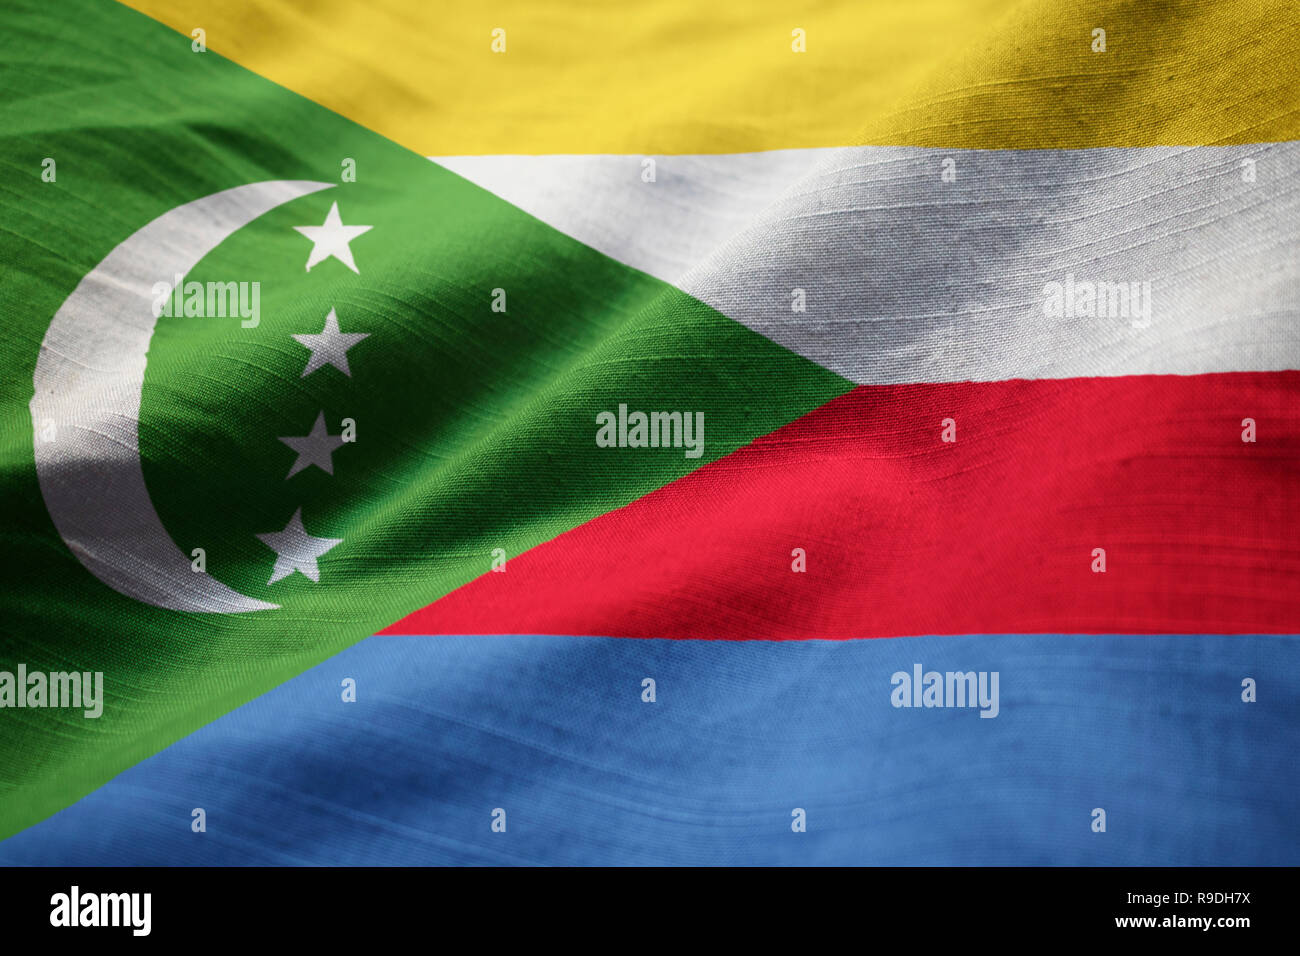 Icône drapeau de Comores - Country flags